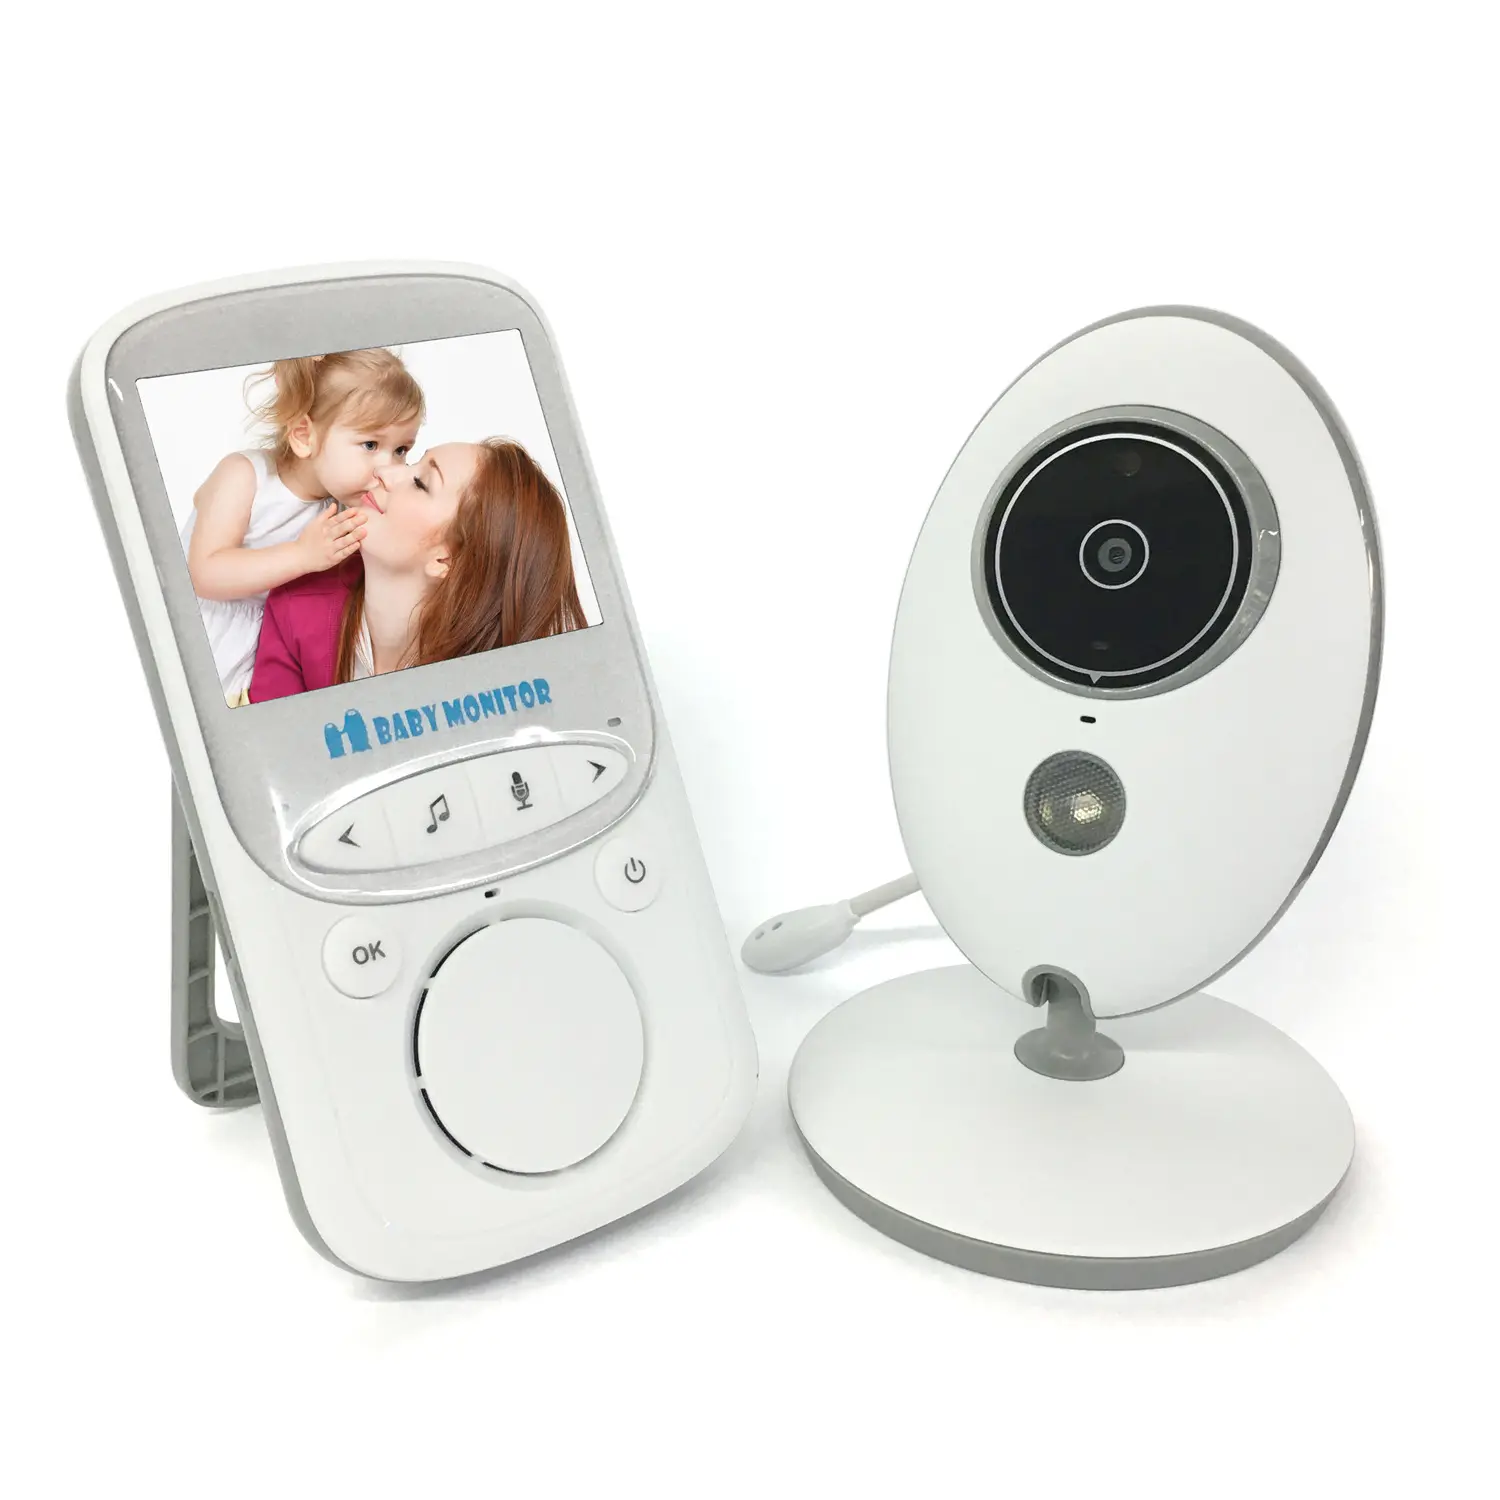 Monitor de Audio y vídeo inalámbrico LCD para bebé, Radio VB605, intercomunicador de música IR 24h, cámara portátil para bebé, Walkie Talkie para bebé, niñera